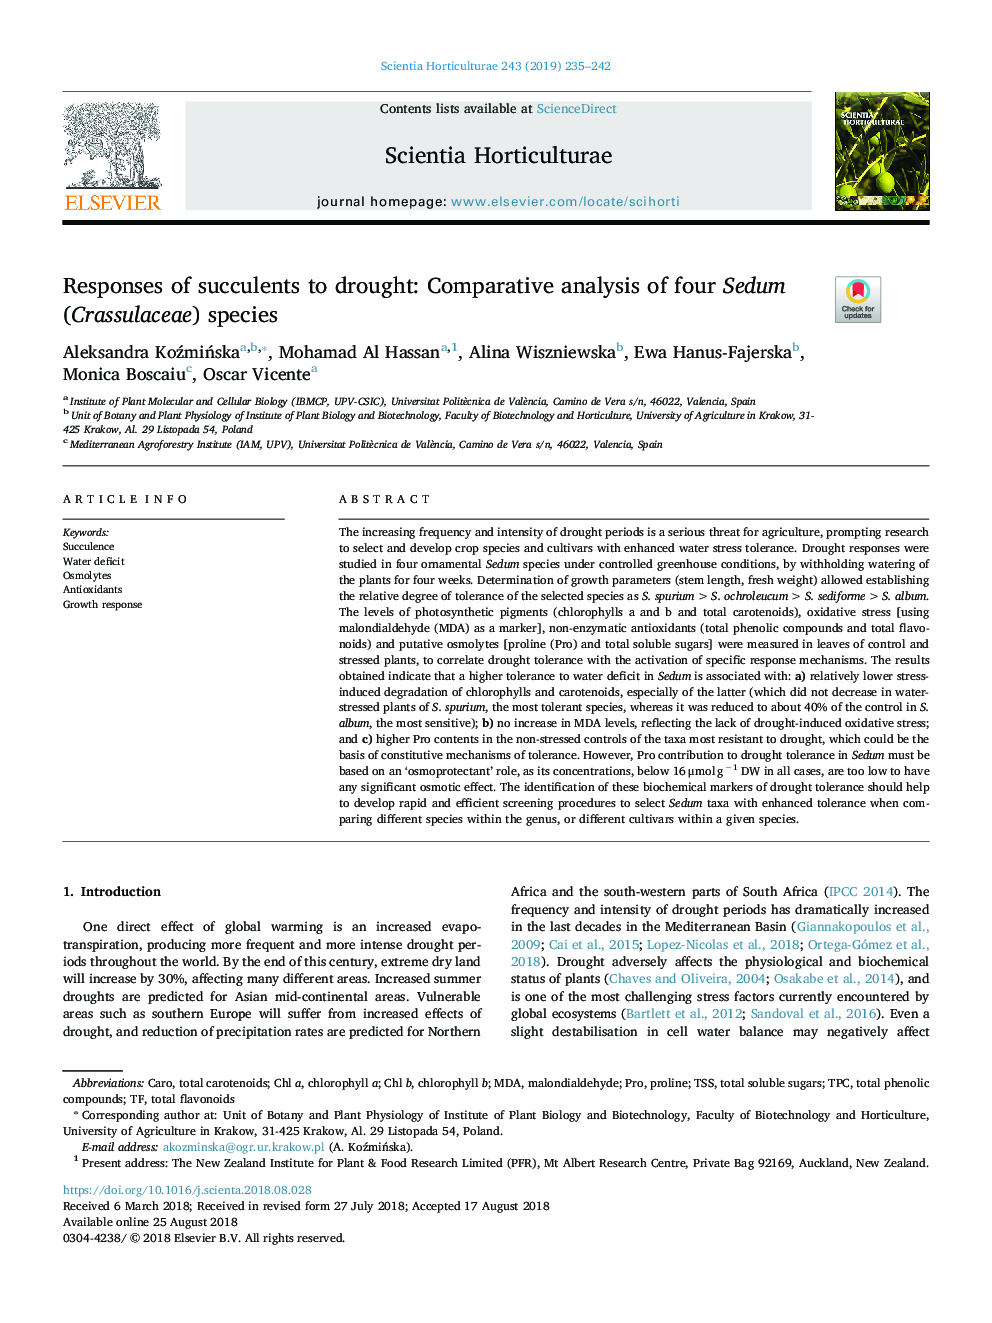 Responses of succulents to drought: Comparative analysis of four Sedum (Crassulaceae) species